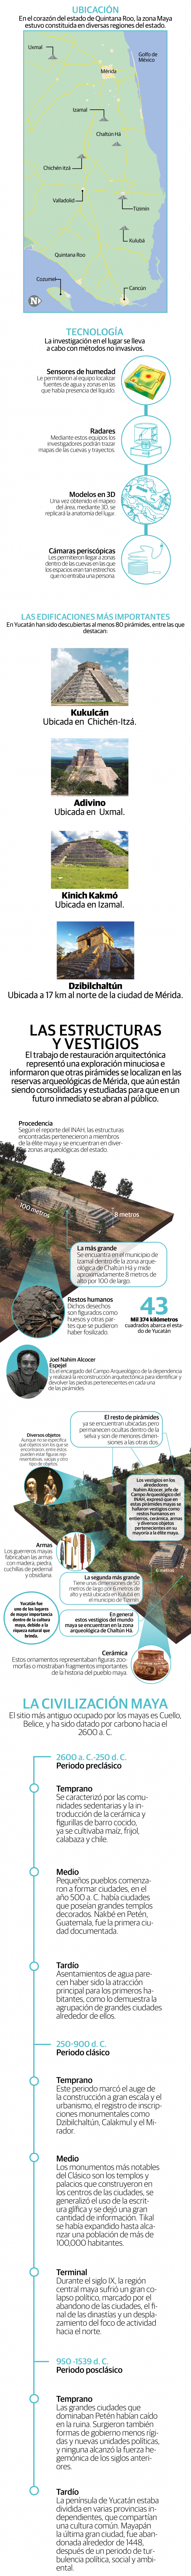 Descubren 6 pirámides en cinco municipios de Yucatán